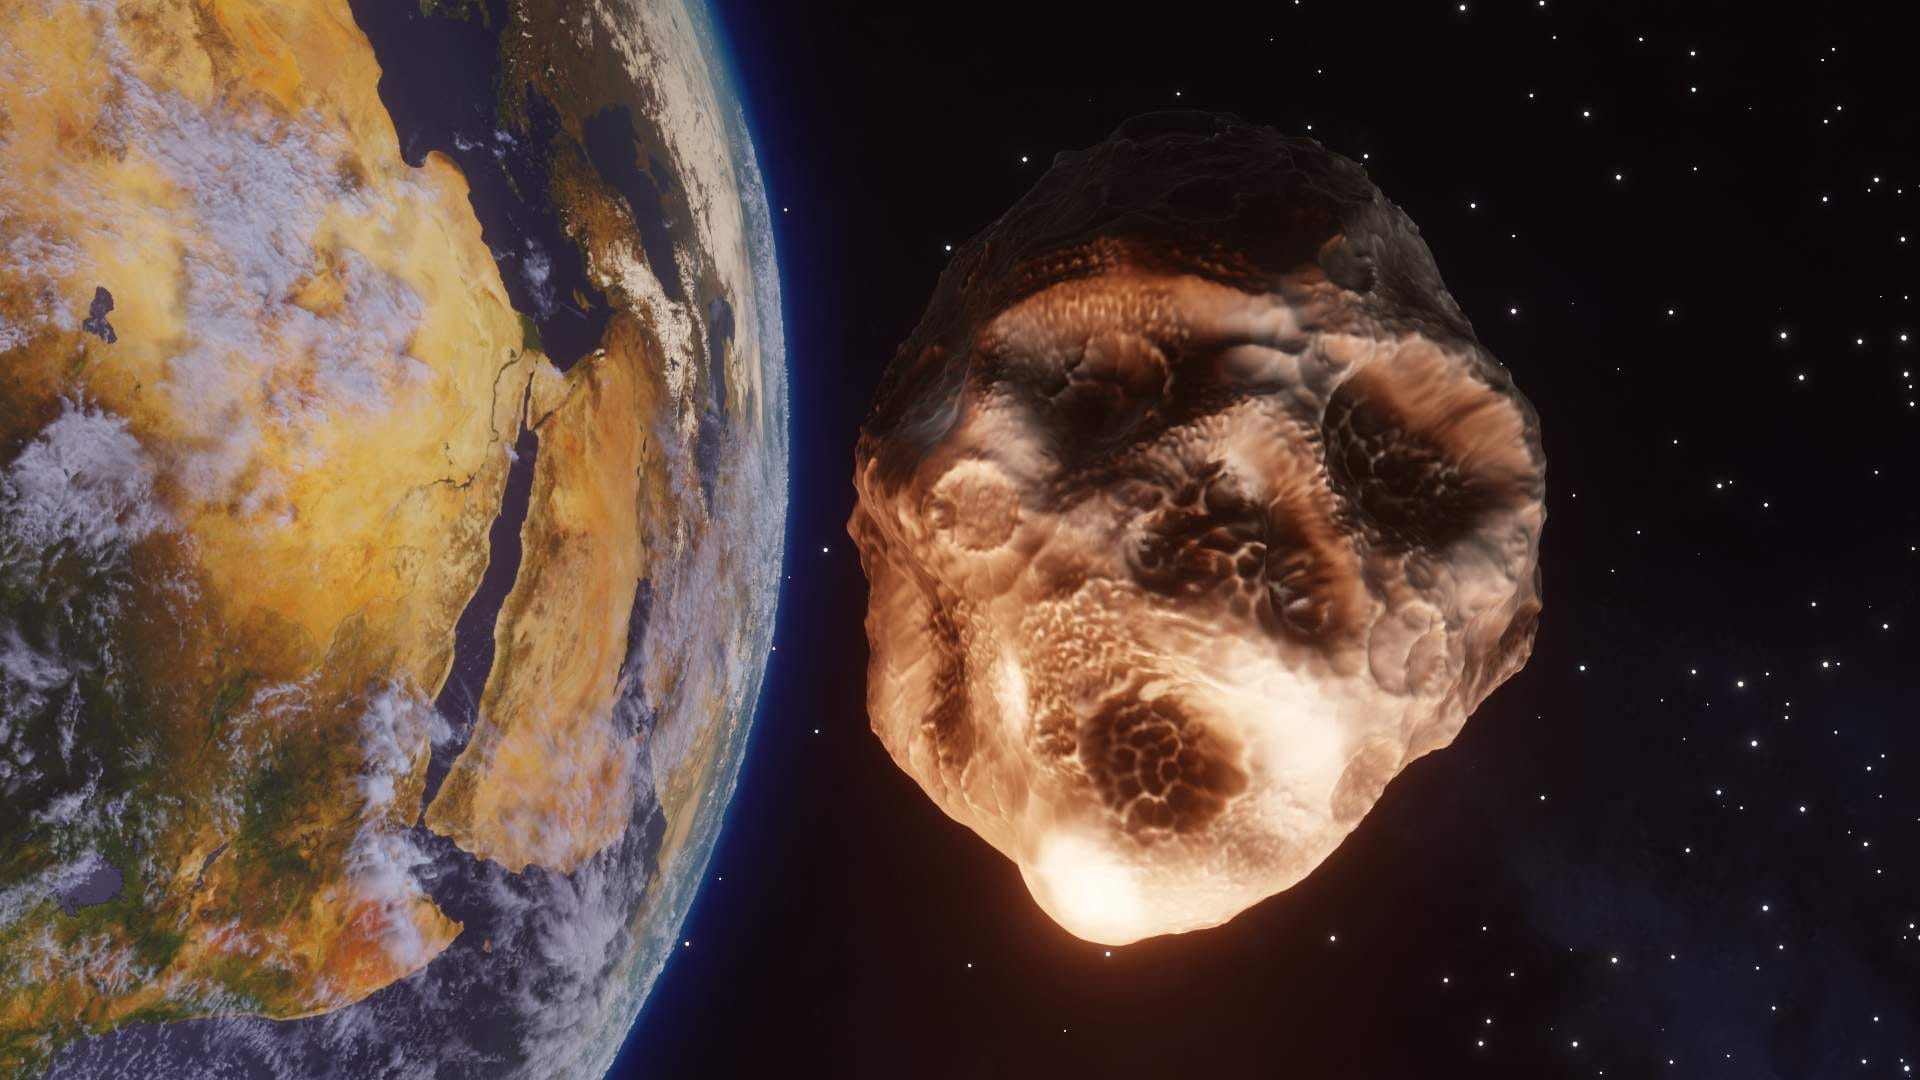 Dovresti preoccuparti del fatto che un asteroide colpisca la Terra?